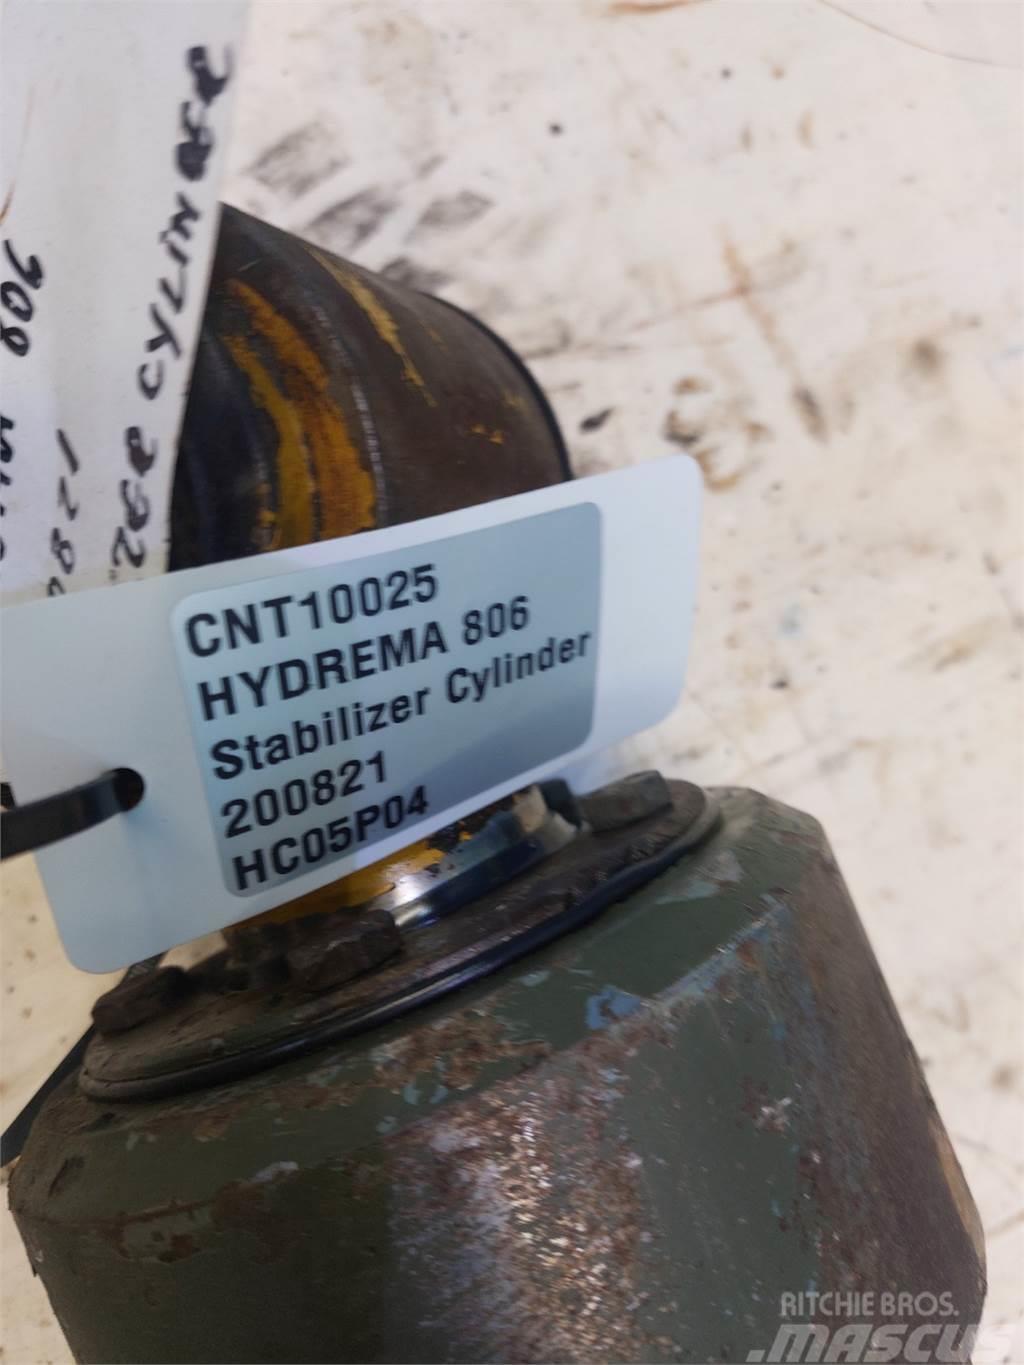 Hydrema 806 Altri componenti